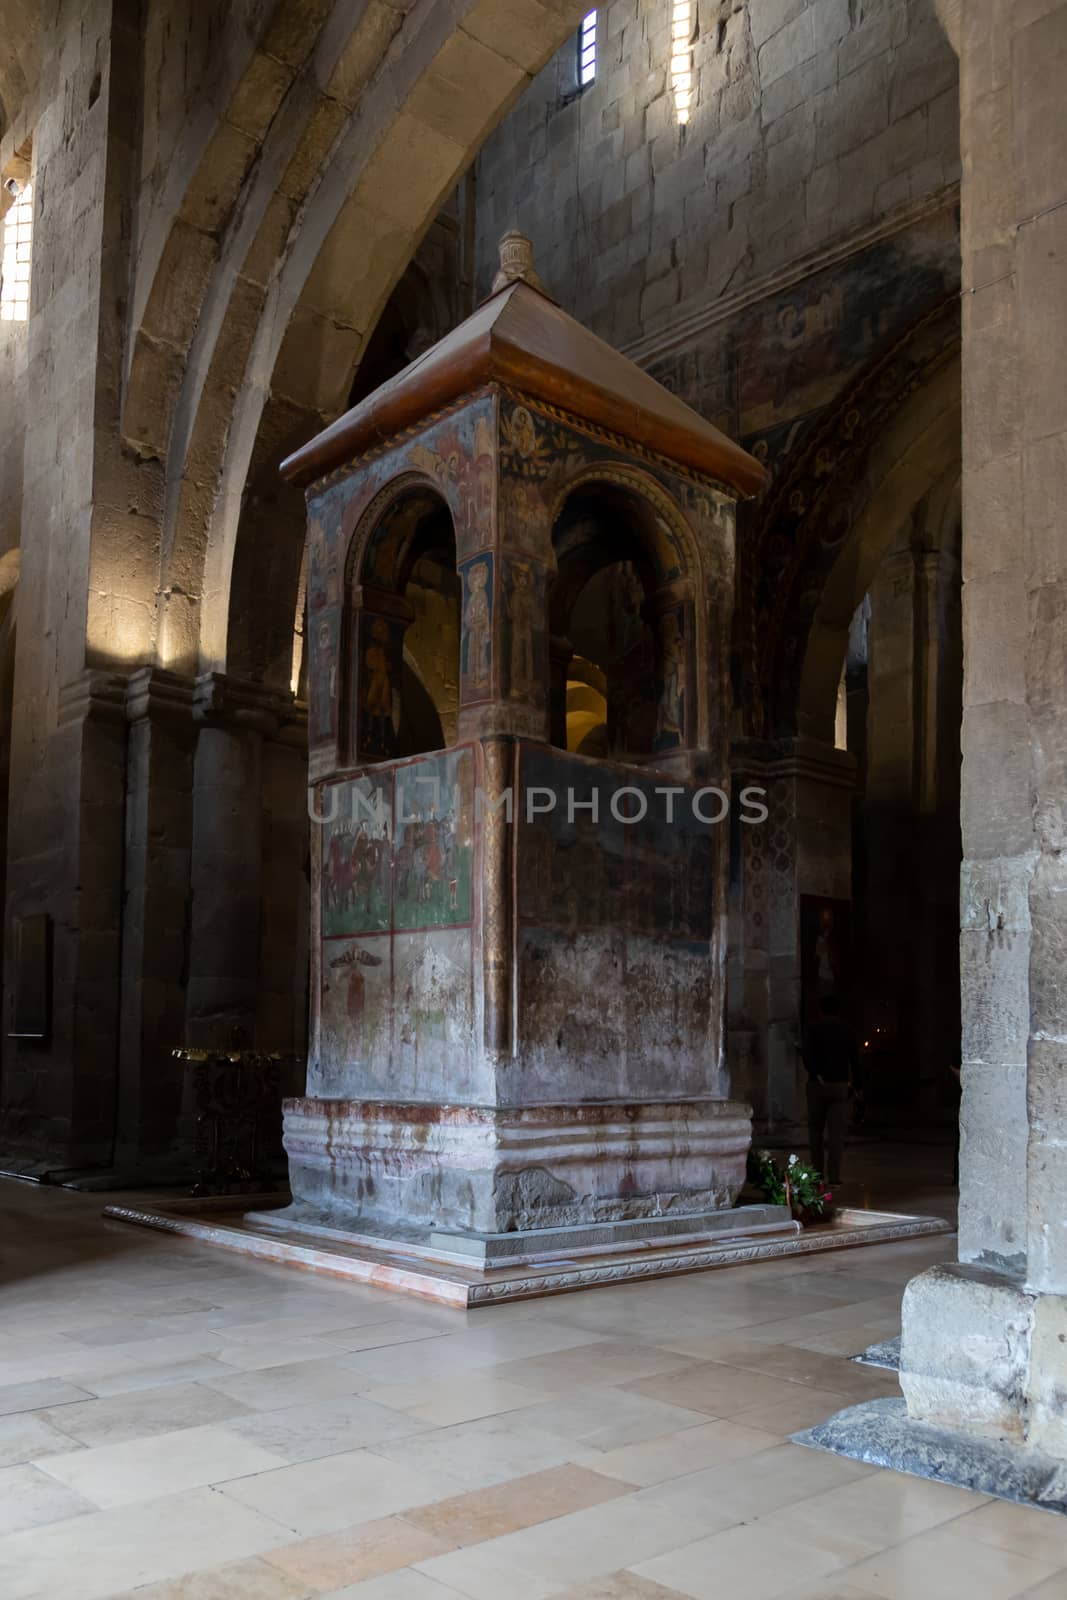 The Svetitskhoveli Cathedral, Mtskheta Georgia 05/10/2019 interior by kgboxford